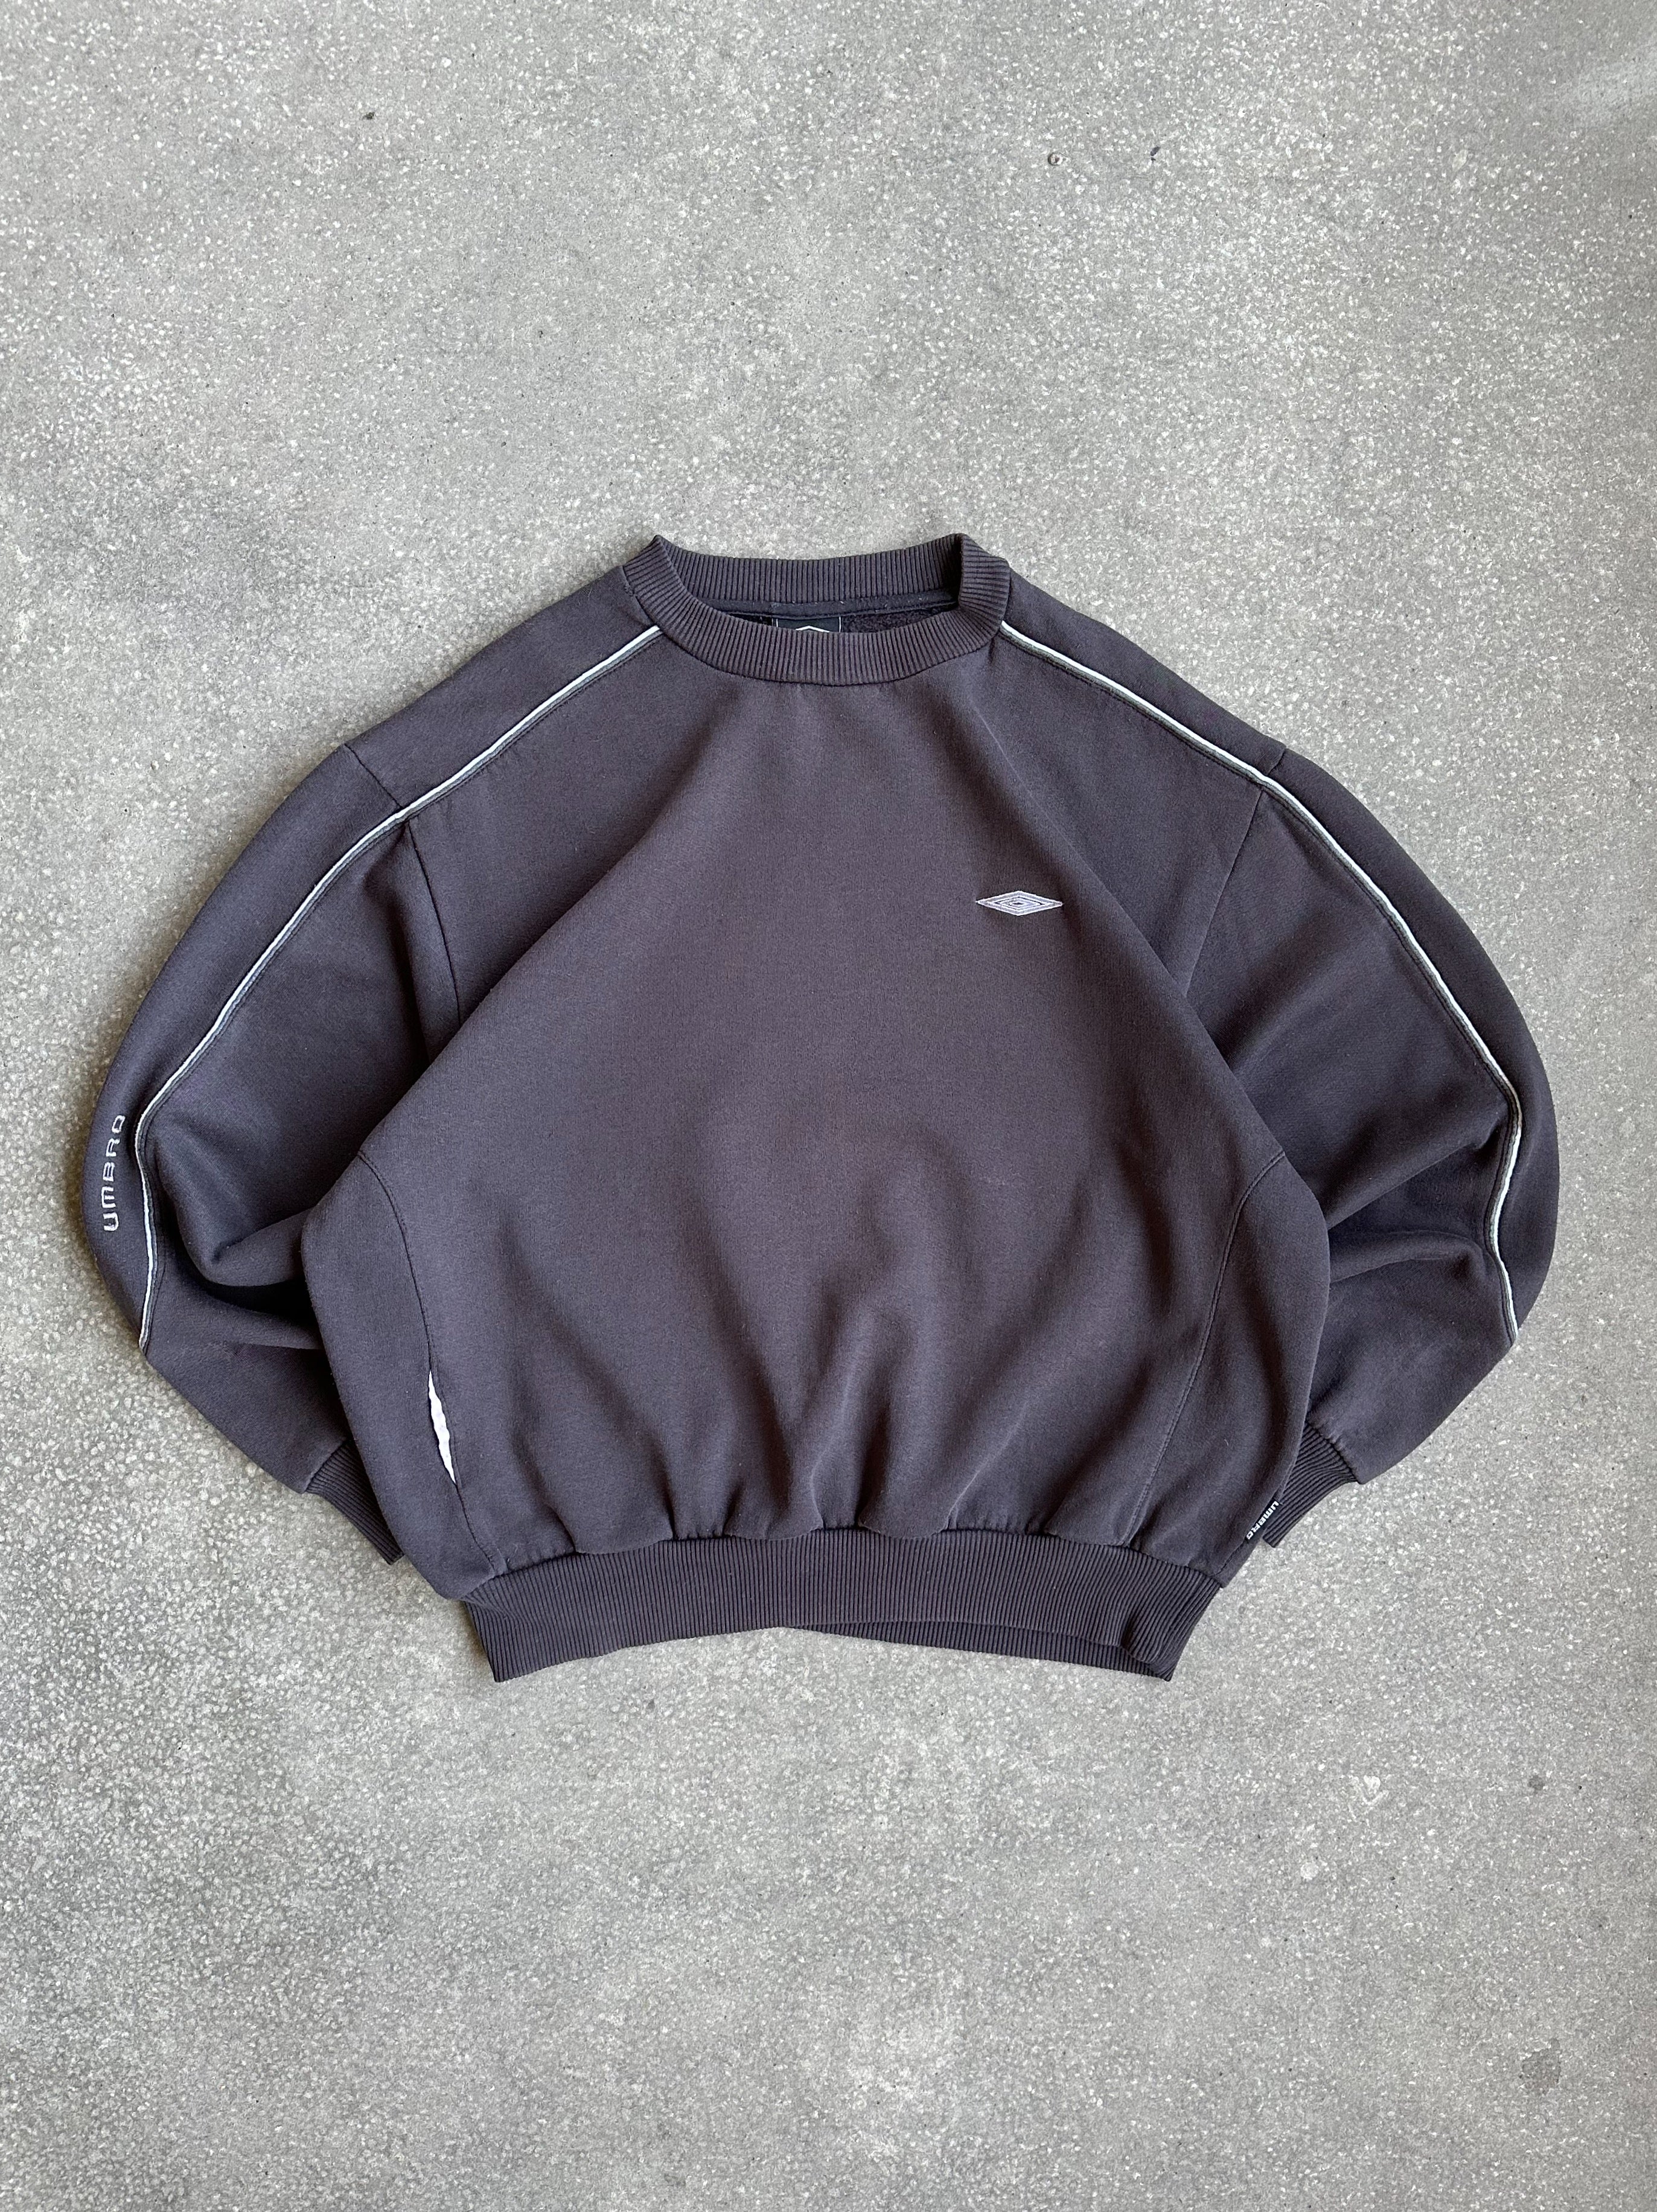 Vintage Umbro Crewneck Sweater - Medium